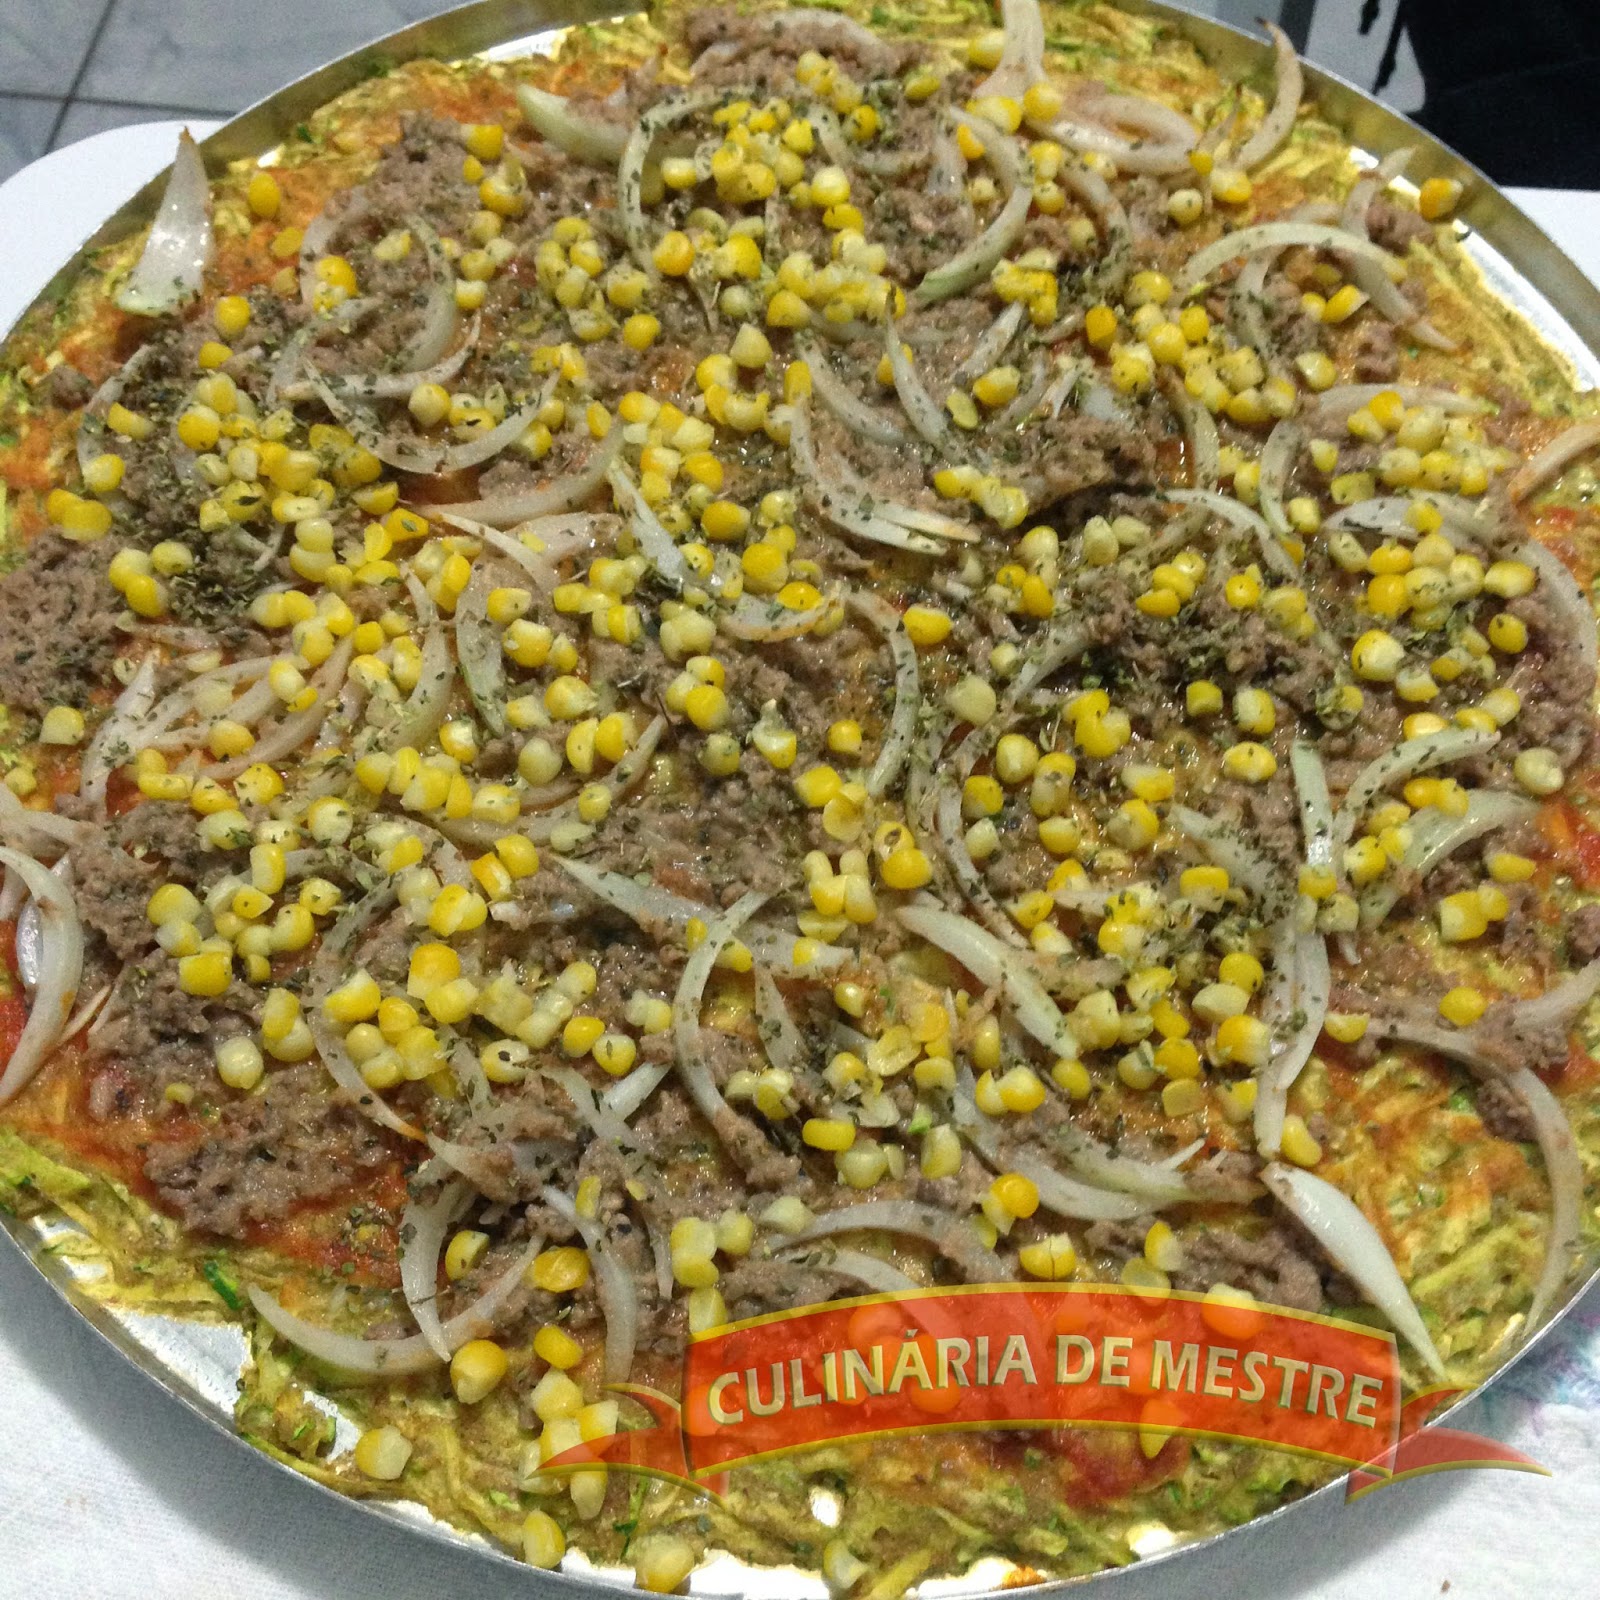 Pizza de Abobrinha